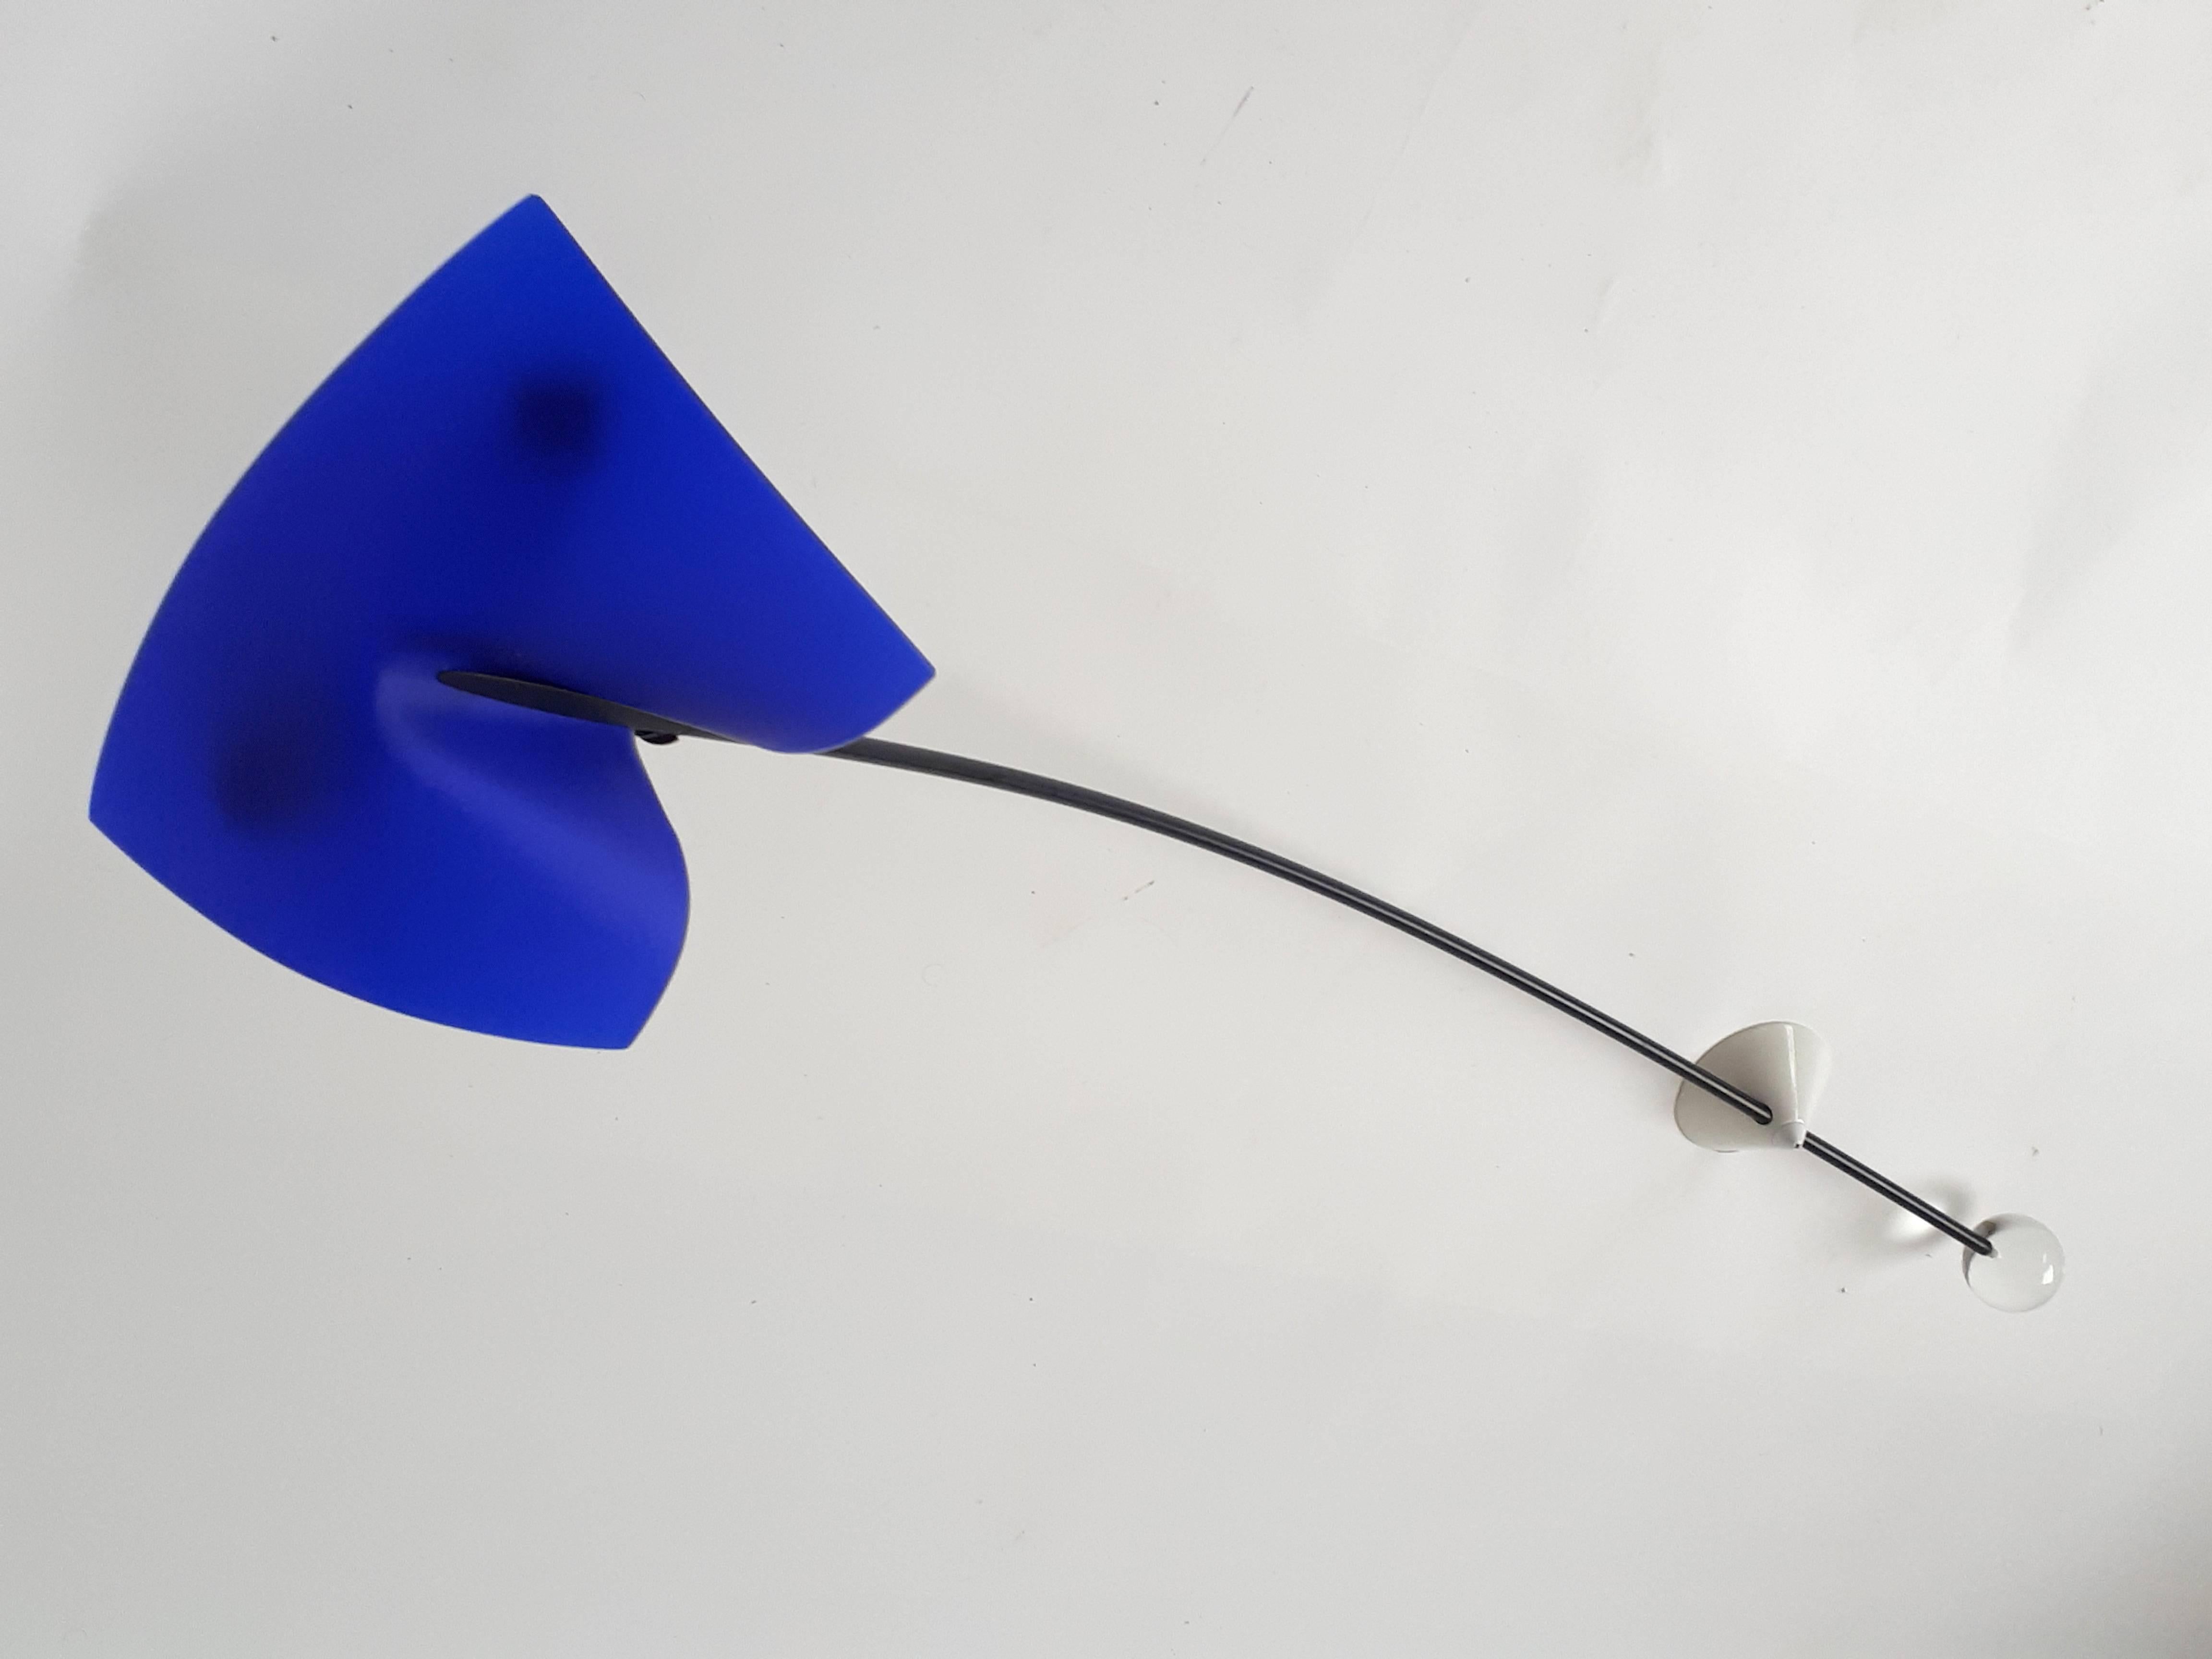 Seltenes Beleuchtungskunstwerk aus der Foscarini 'Ricerca'-Serie in einem kobaltblauen Ton 

Dies ist die längere Version. Er ist 51 Zoll lang.

Massives, passendes Glaskugel-Gegengewicht in transluzidem Blau (nicht klar).

Gut gemacht mit